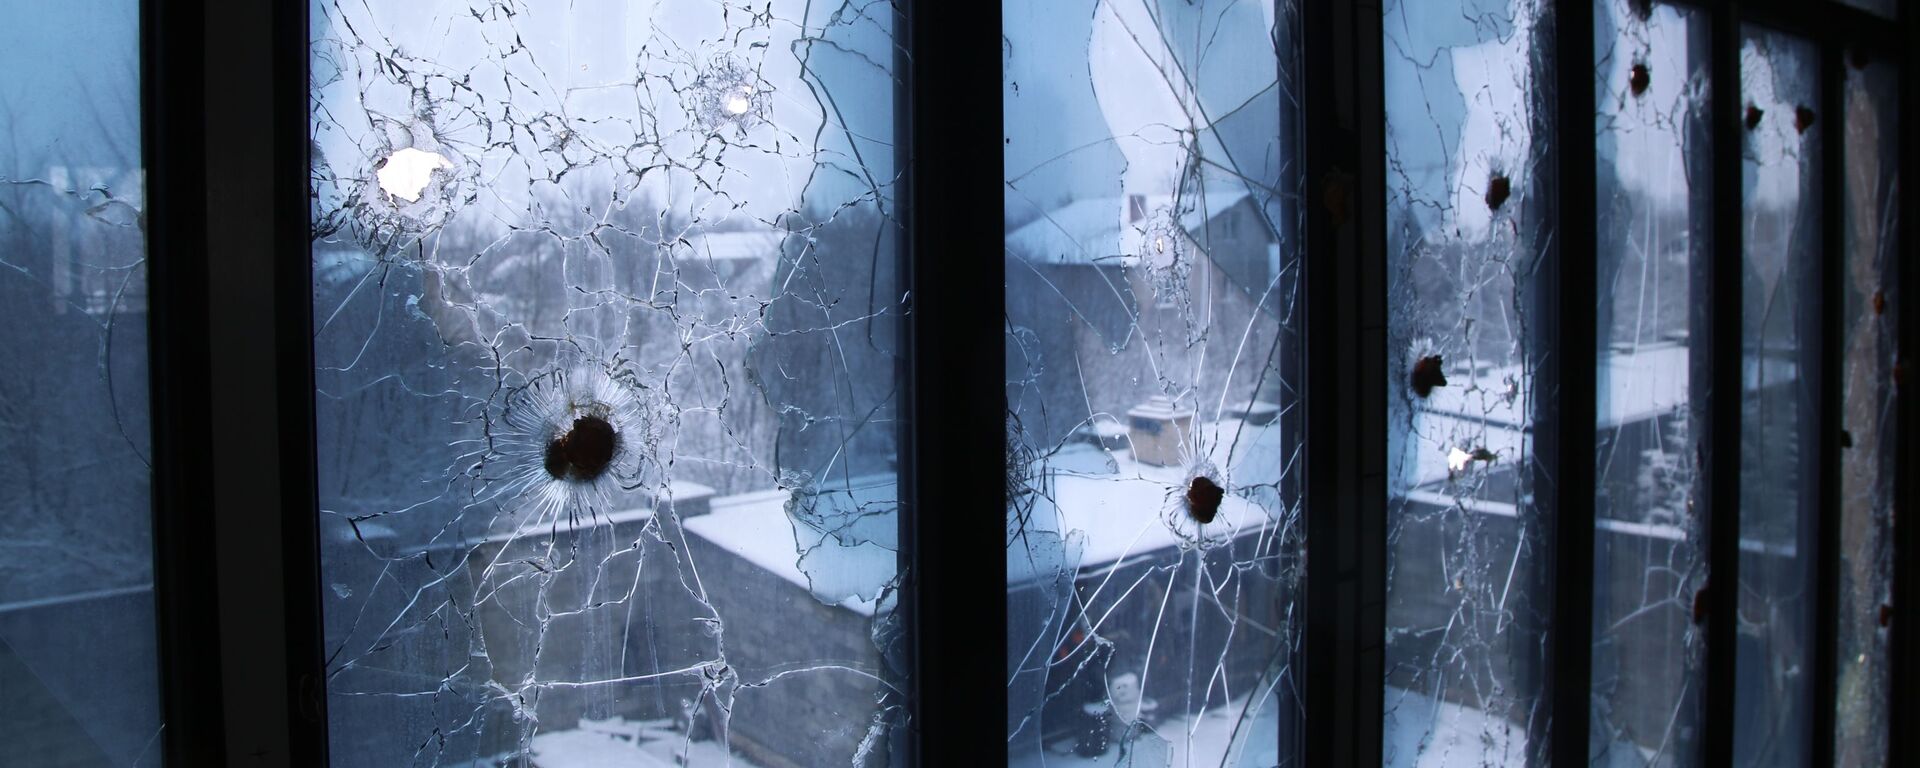 Трагови метака на прозорима куће у Доњецкој области - Sputnik Србија, 1920, 13.04.2021